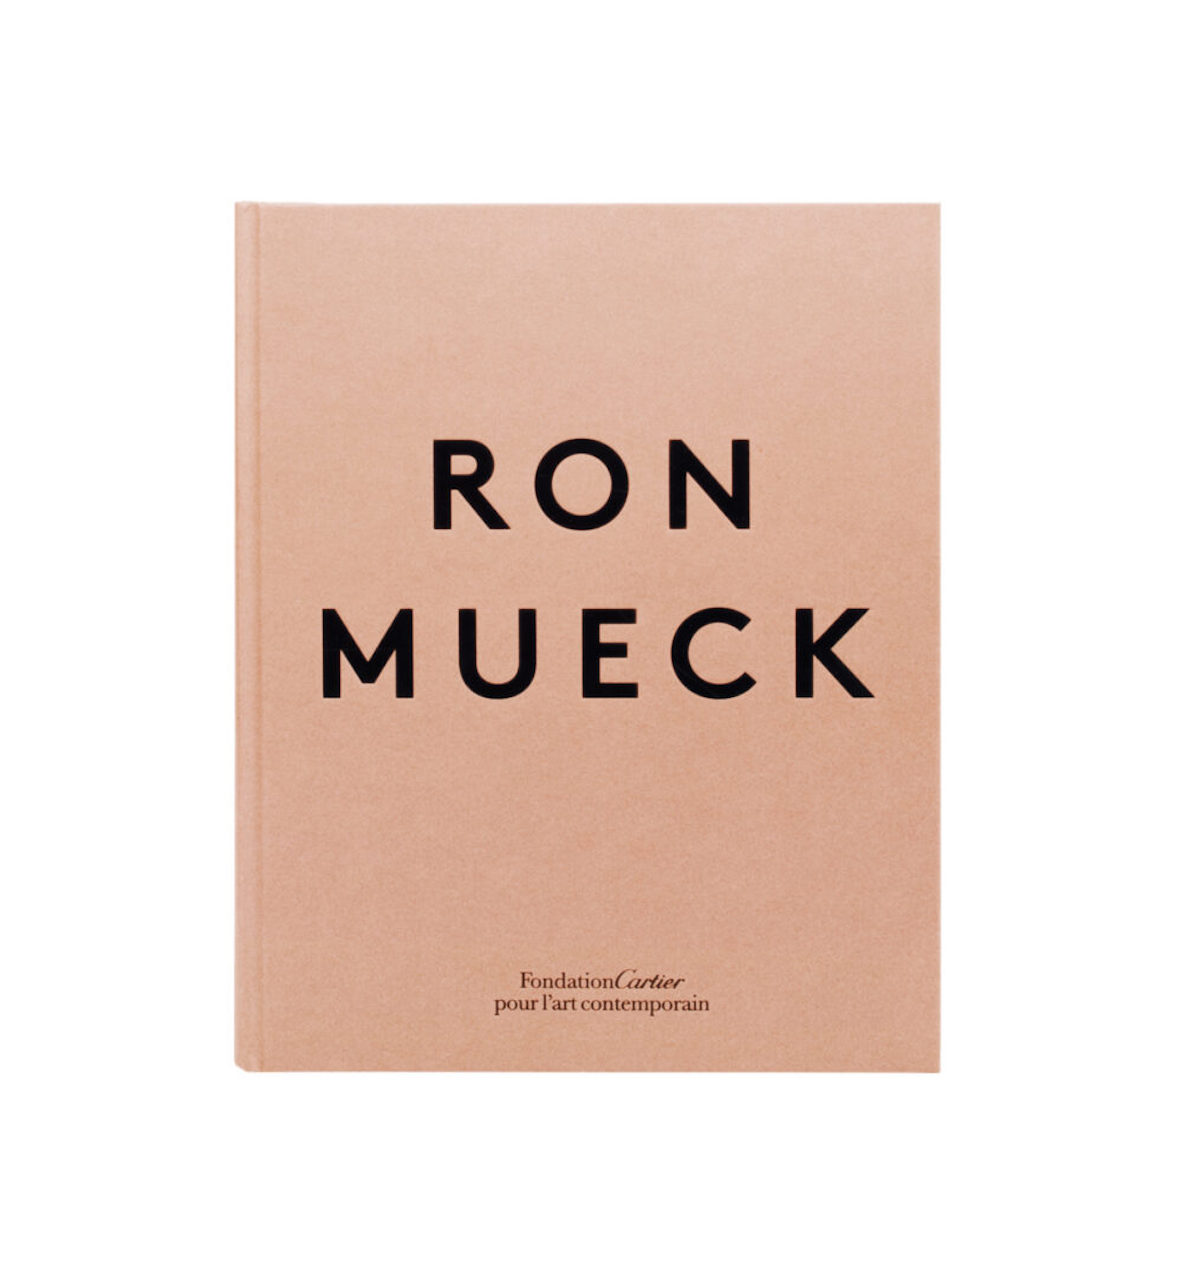 Ron Mueck, catalogo ragionato, copertina libro